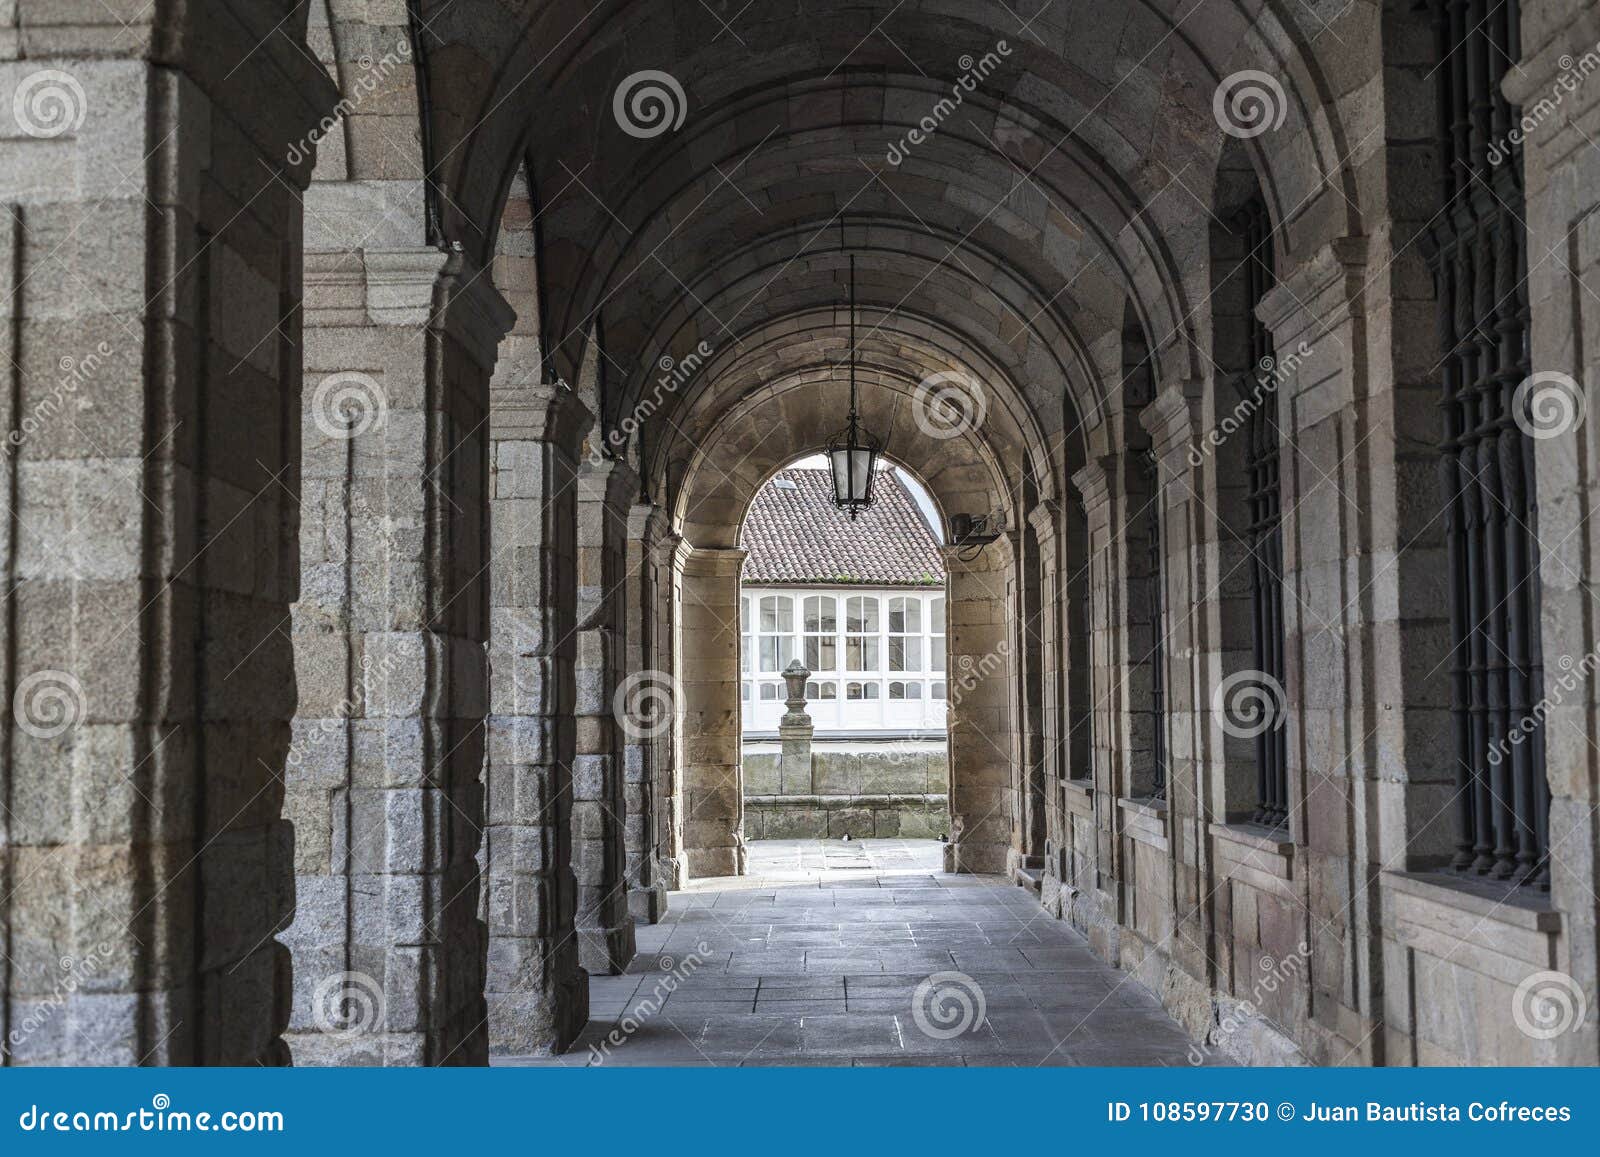 arches in palace, palacio de raxoi, obradoiro square.santiago de